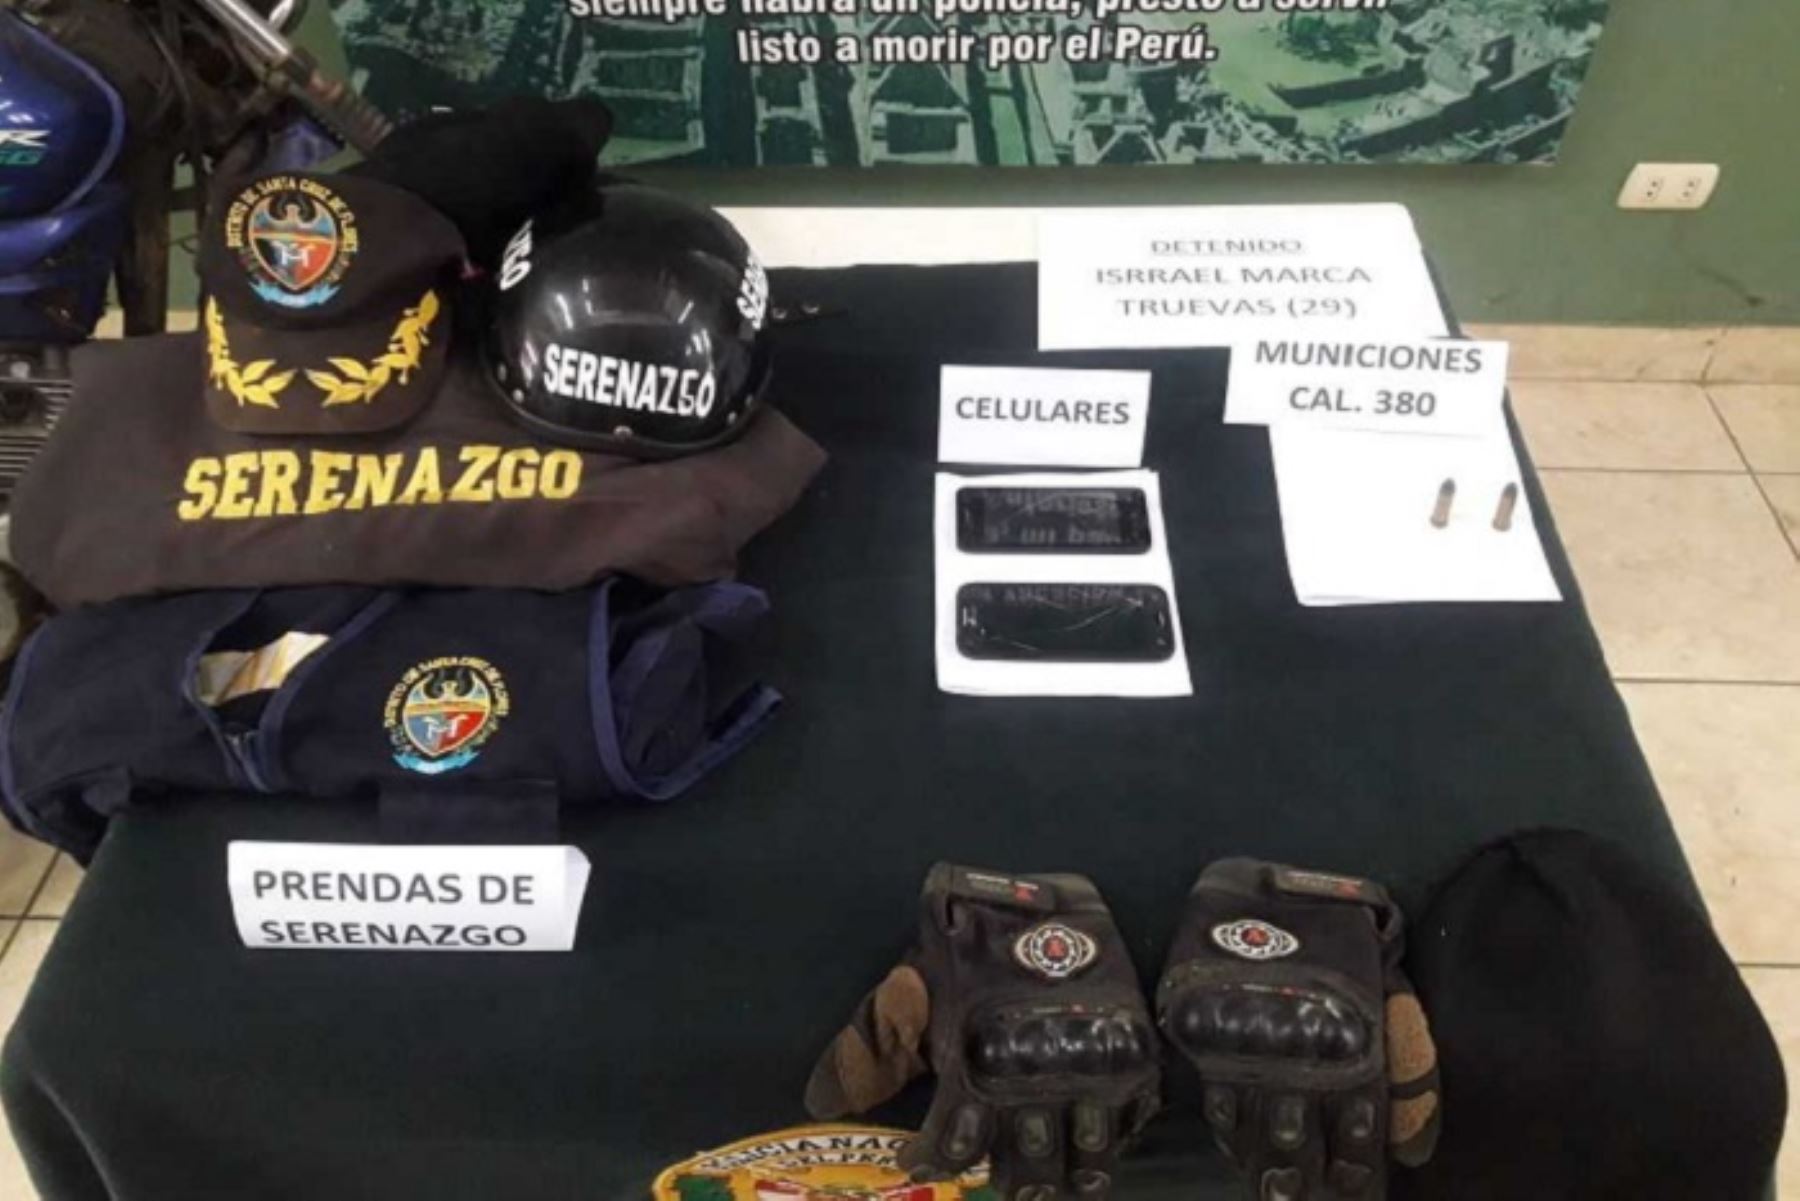 Banda criminal “Los Jefes de Santa Cruz” tenía atemorizada a la población de Cañete, perpetrando robos a las fincas de la zona,